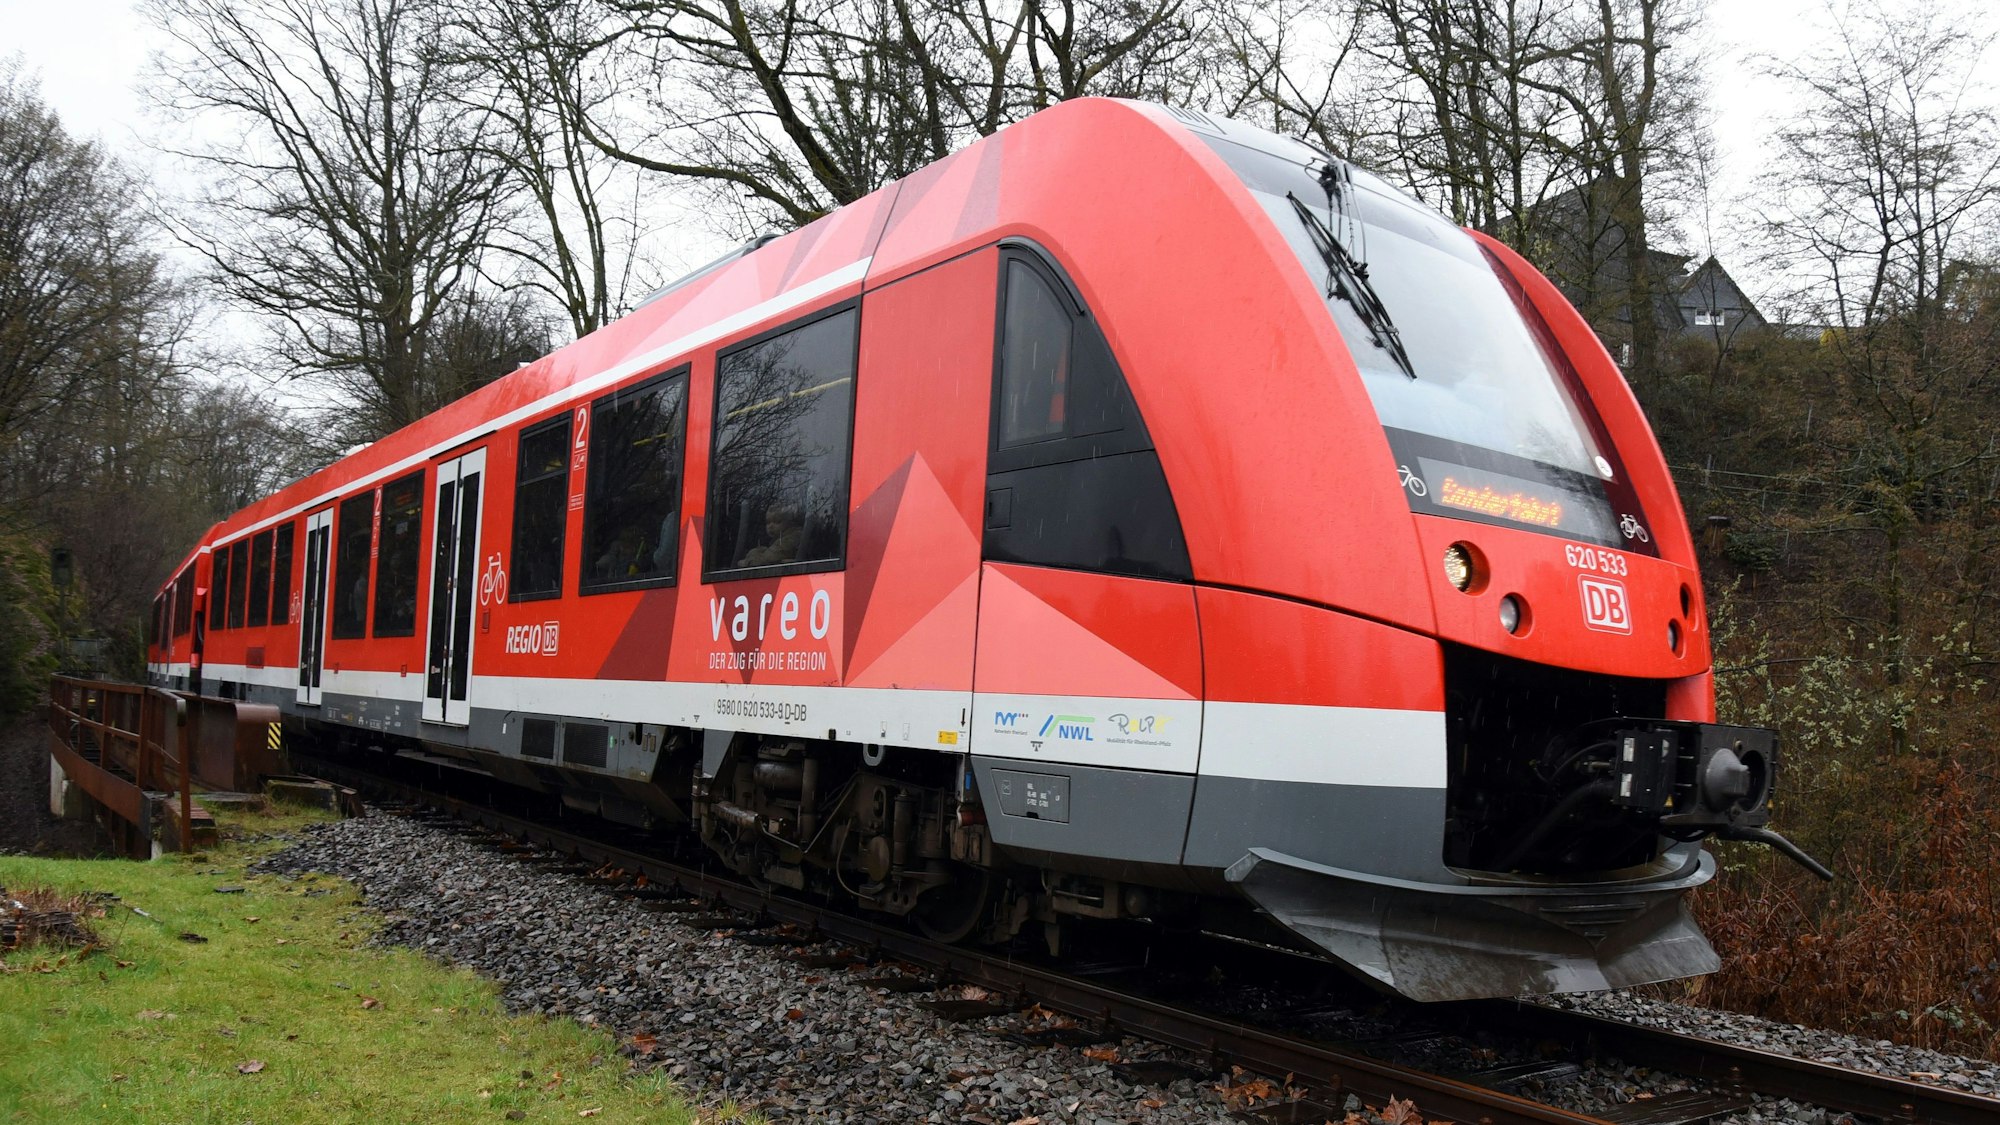 Symbolbild: Ein roter Zug fährt über Schienen